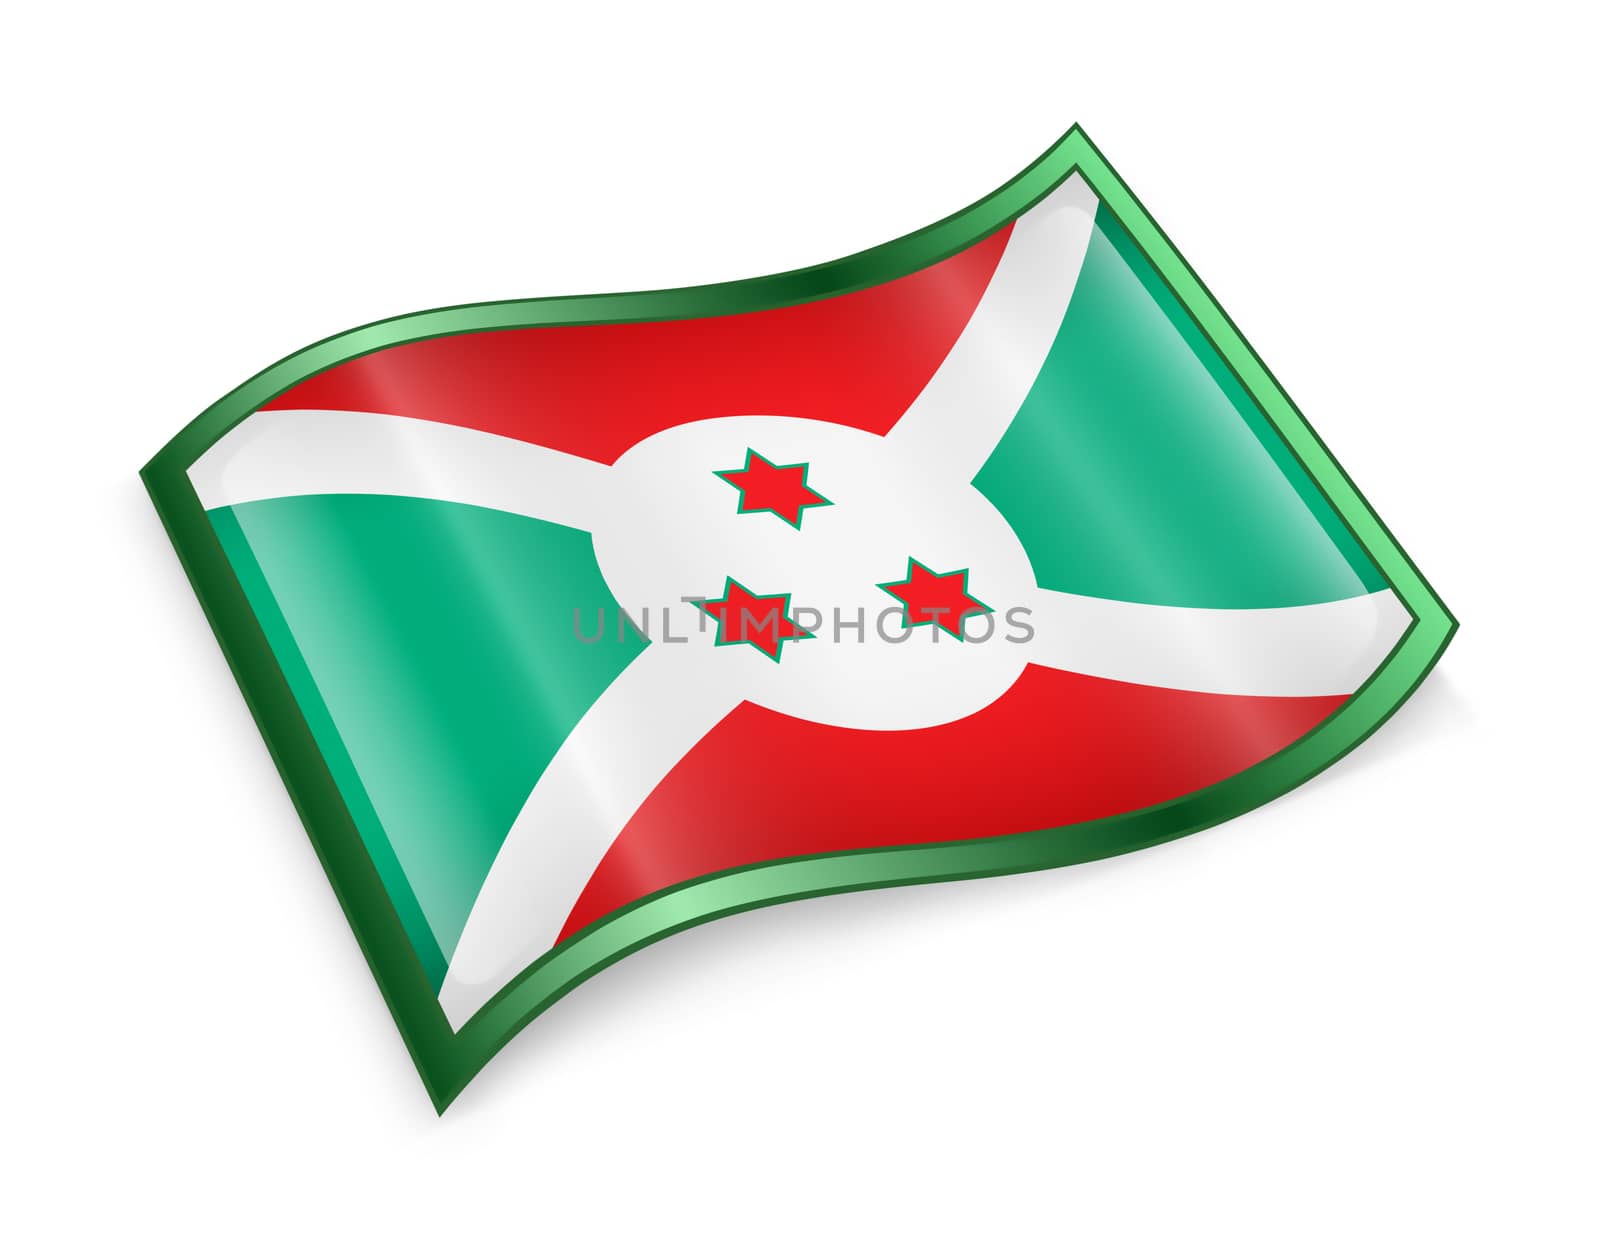 Burundi Flag icon, isolated on white background.